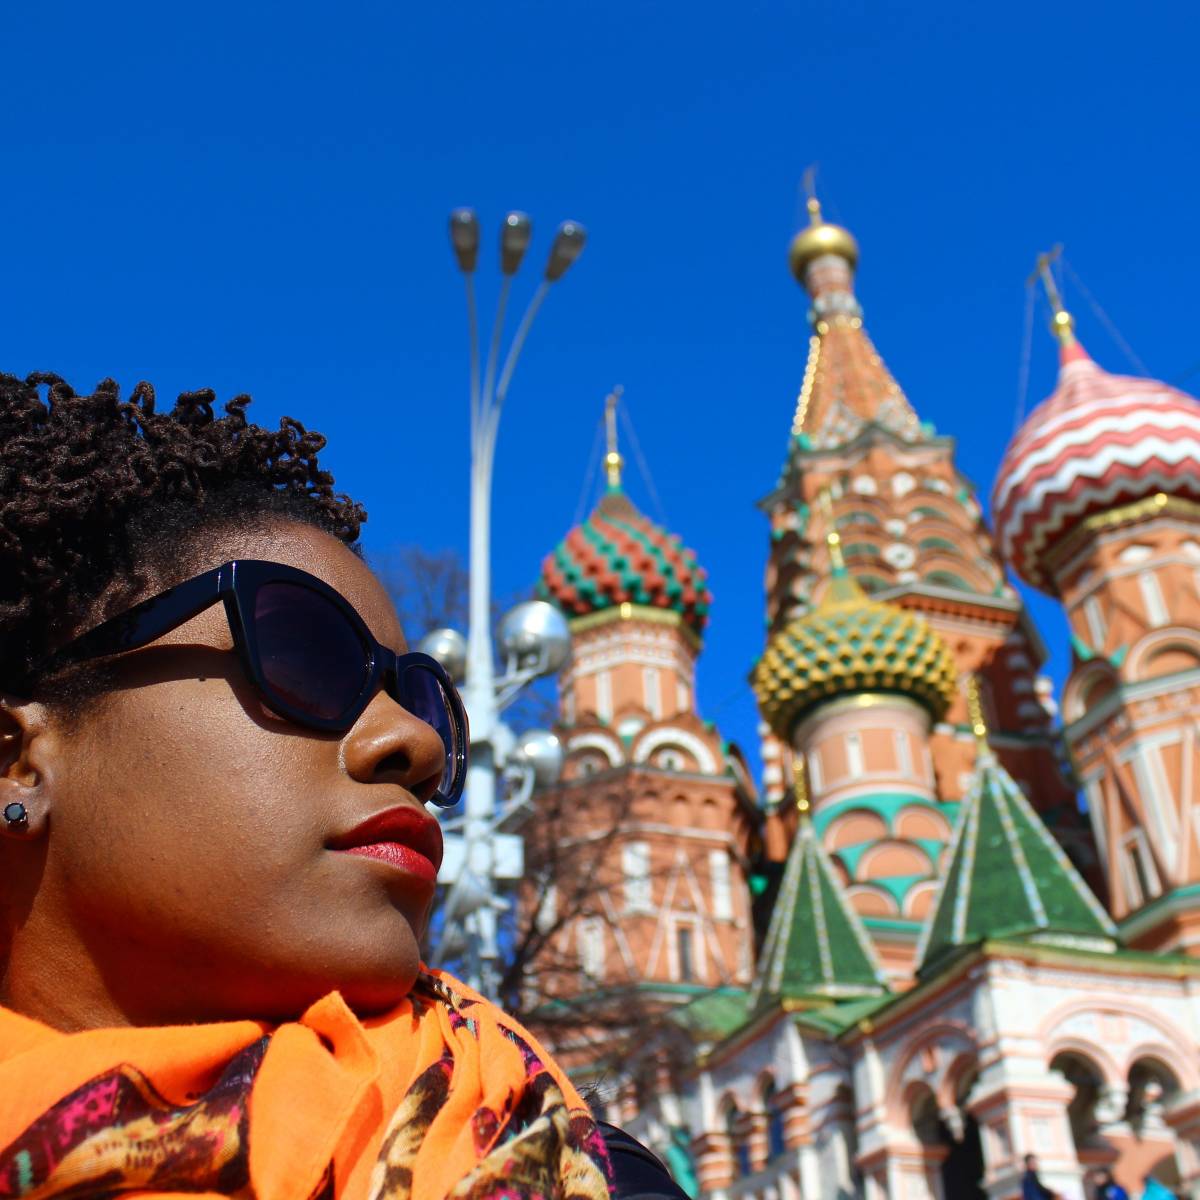 Американка Онейка Рэймонд о расизме в России: приезжайте, увидите все сами